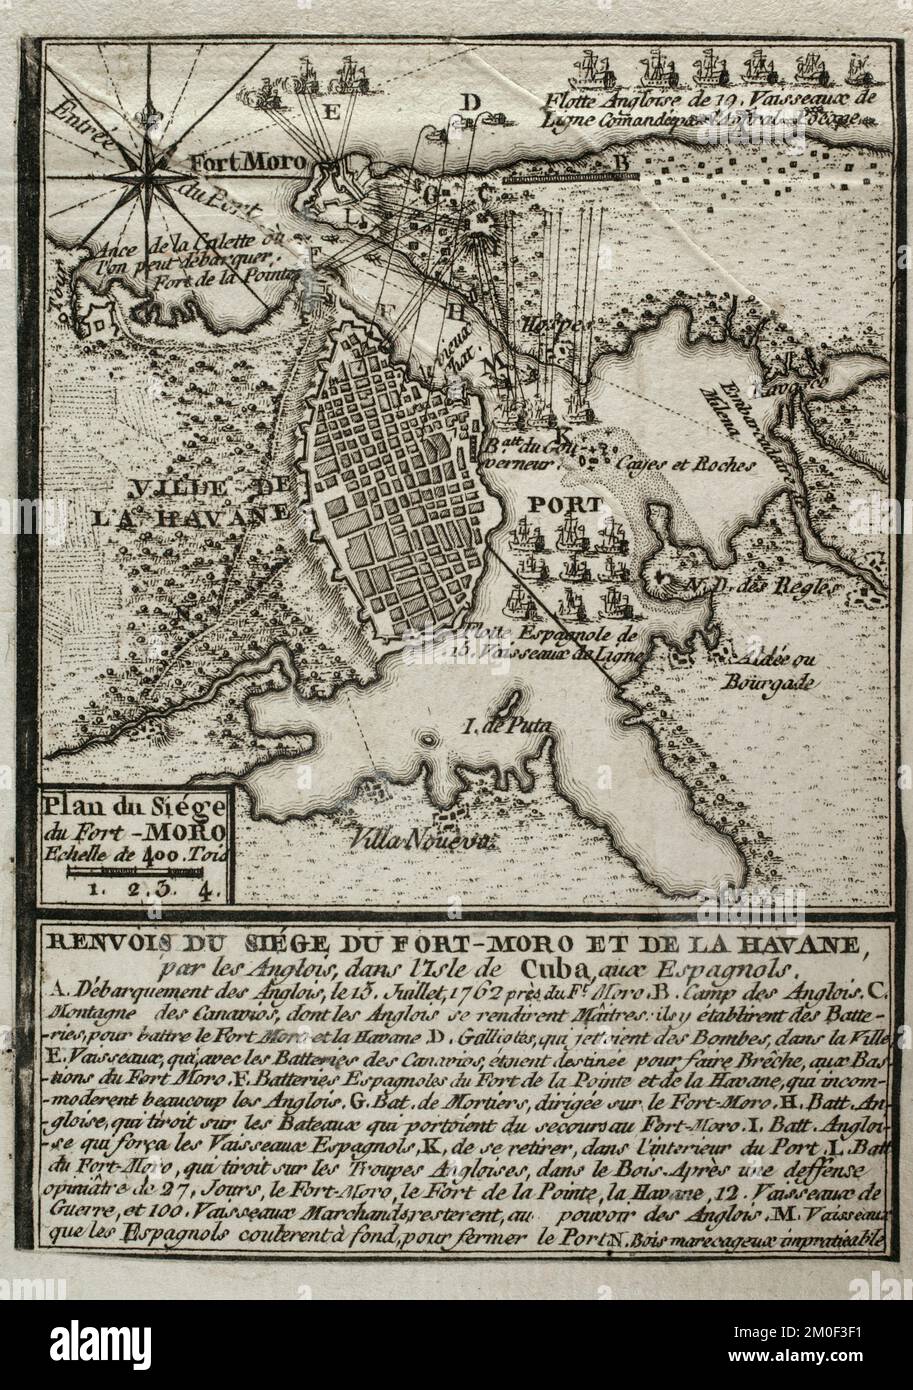 Guerra dei sette anni (1756-1763). Mappa dell'assedio di Fort Morro, 1762. Isola di Cuba. Cattura dell'Avana. Le truppe inglesi attaccarono le difese spagnole quando entrarono in conflitto con la Corona spagnola, seguendo l'alleanza della Spagna con la Francia, nemico dell'Inghilterra. Le truppe britanniche sbarcarono sull'isola il 13 luglio 1762, conquistandola in agosto. Pubblicato nel 1765 dal cartografo Jean de Beaurain (1696-1771) come illustrazione della sua Grande carta della Germania, con gli eventi che si sono verificati durante la Guerra dei sette anni. Incisione. Edizione francese, 1765. Biblioteca storica militare di Barcellona (Bibliote Foto Stock